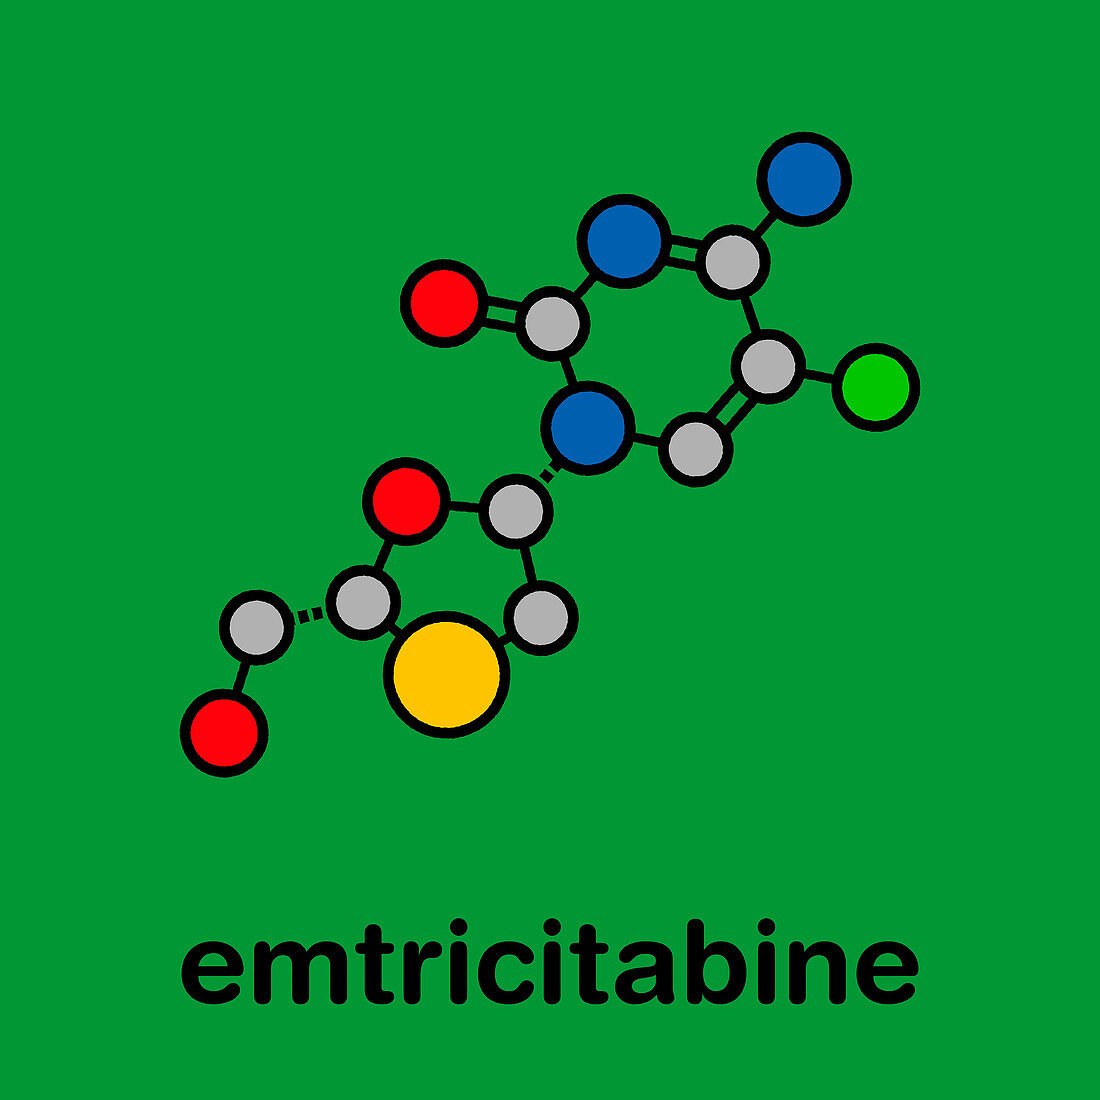 Emtricitabine HIV drug, molecular model